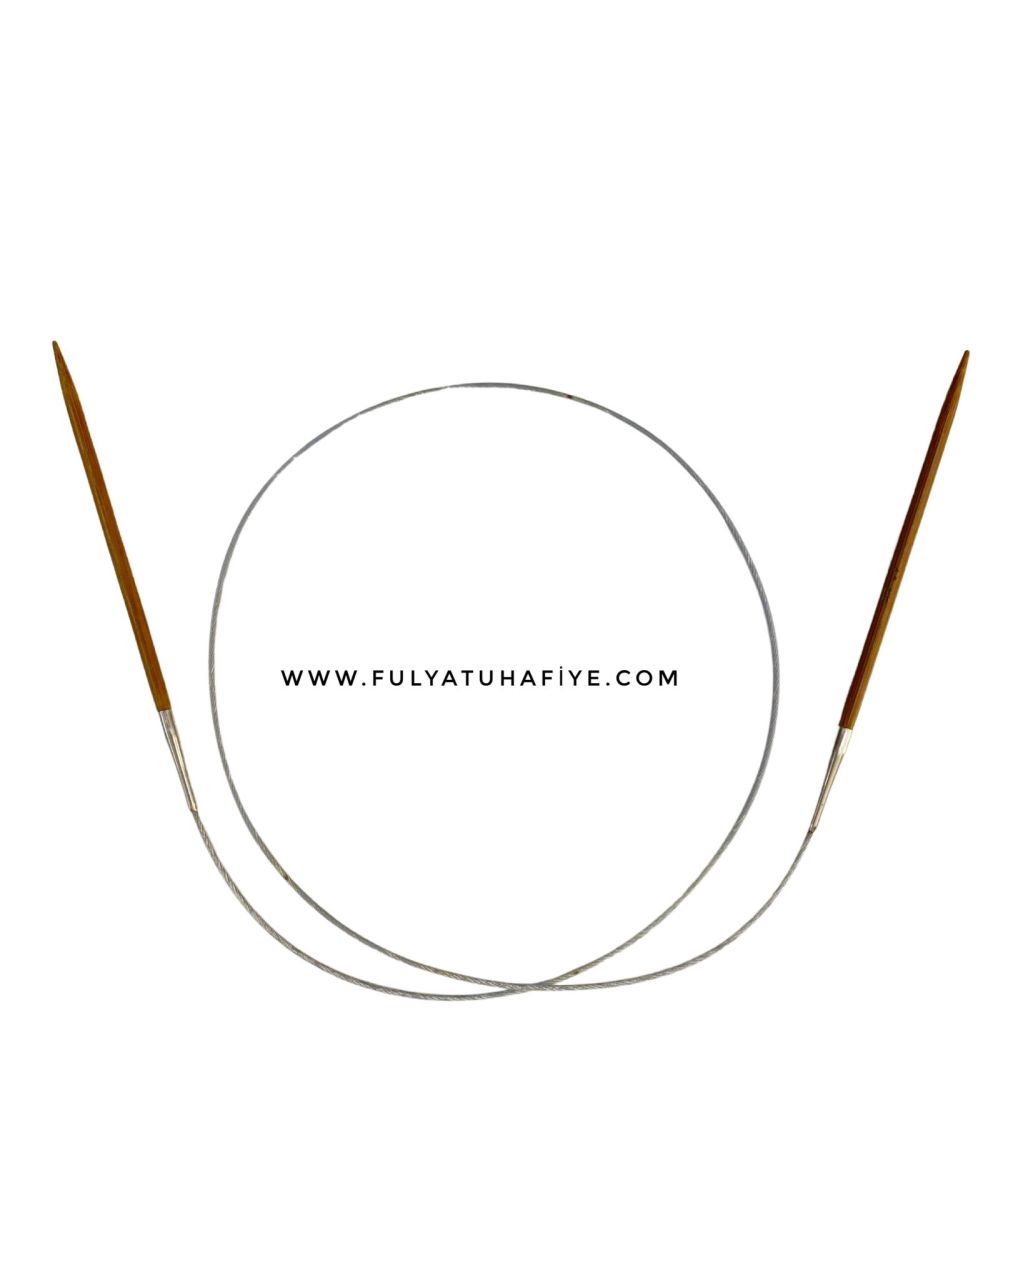 İthal Bambu Uçlu Çelik Misinalı Şiş 100 cm